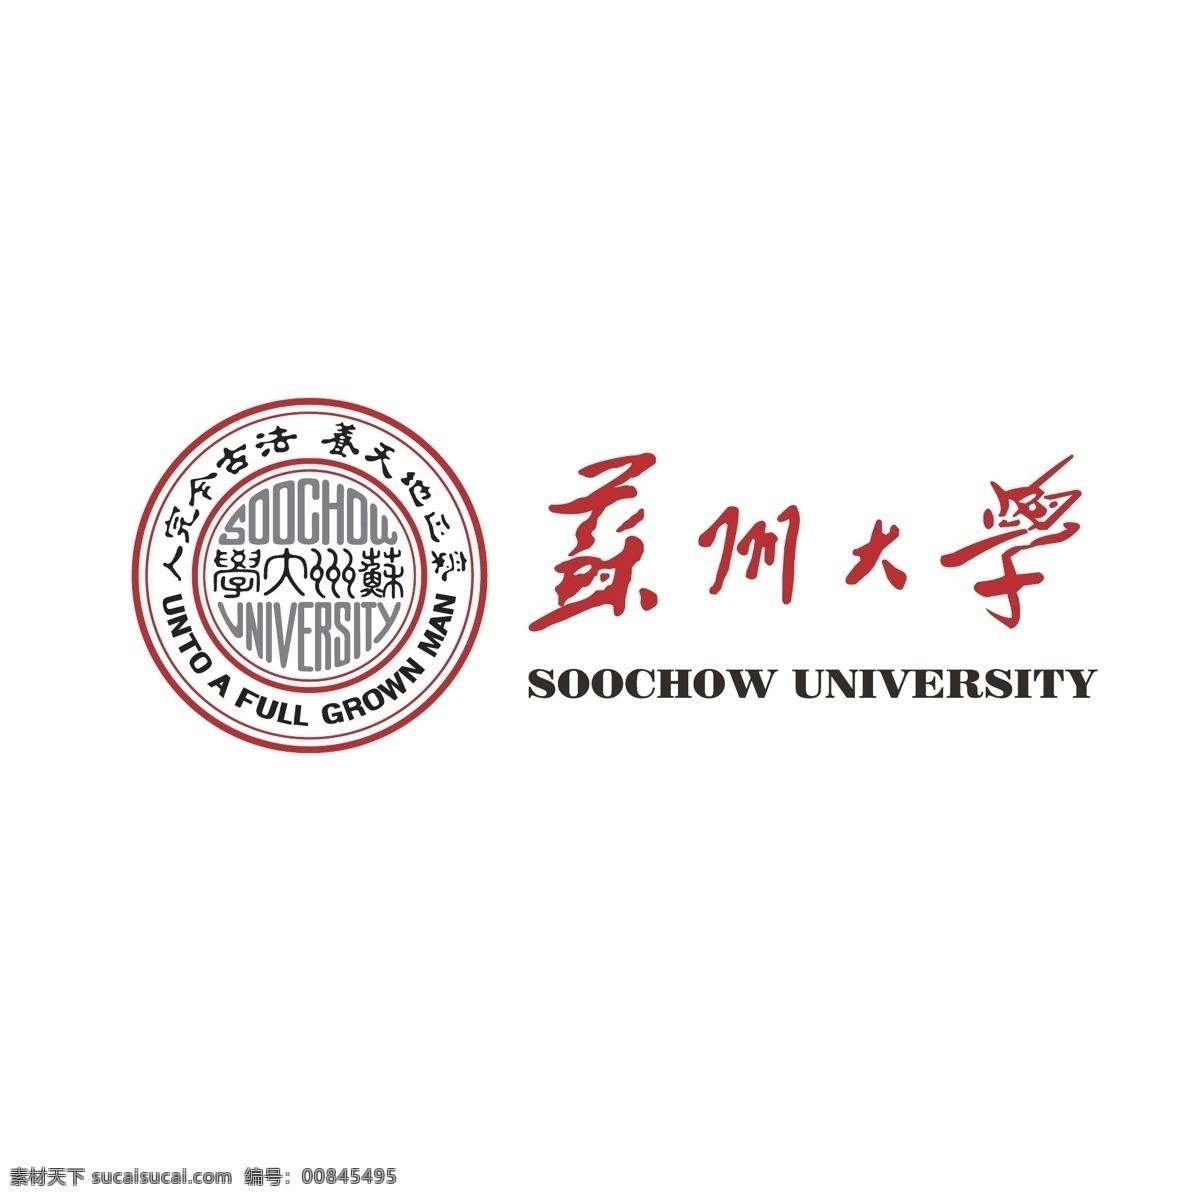 苏州大学 logo 大学 大学logo 苏州 标志图标 企业 标志